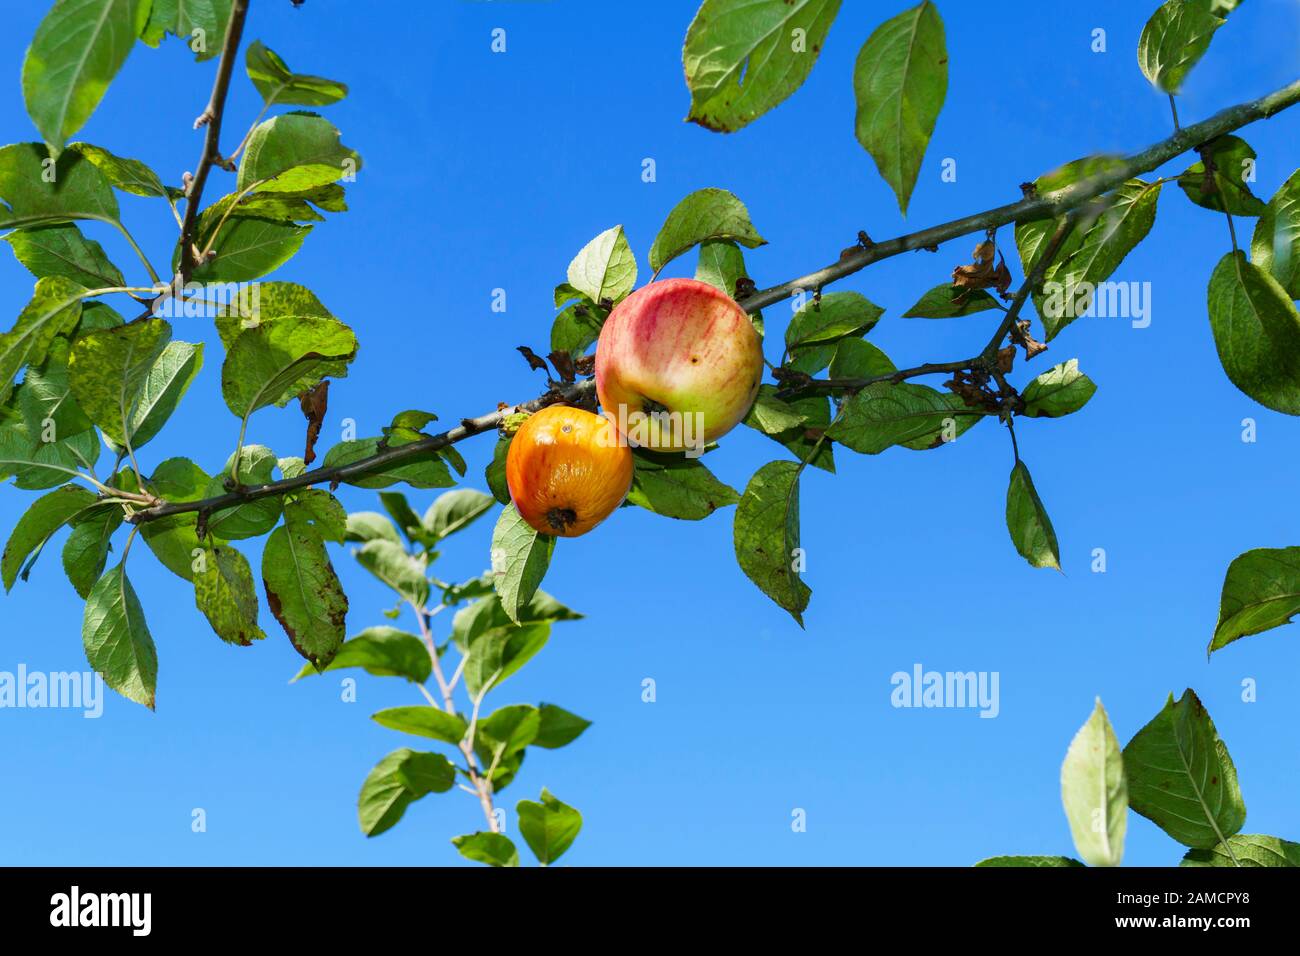 Apfelbaum mit einigen roten Äpfeln und Pilzbefall am Stamm Foto Stock